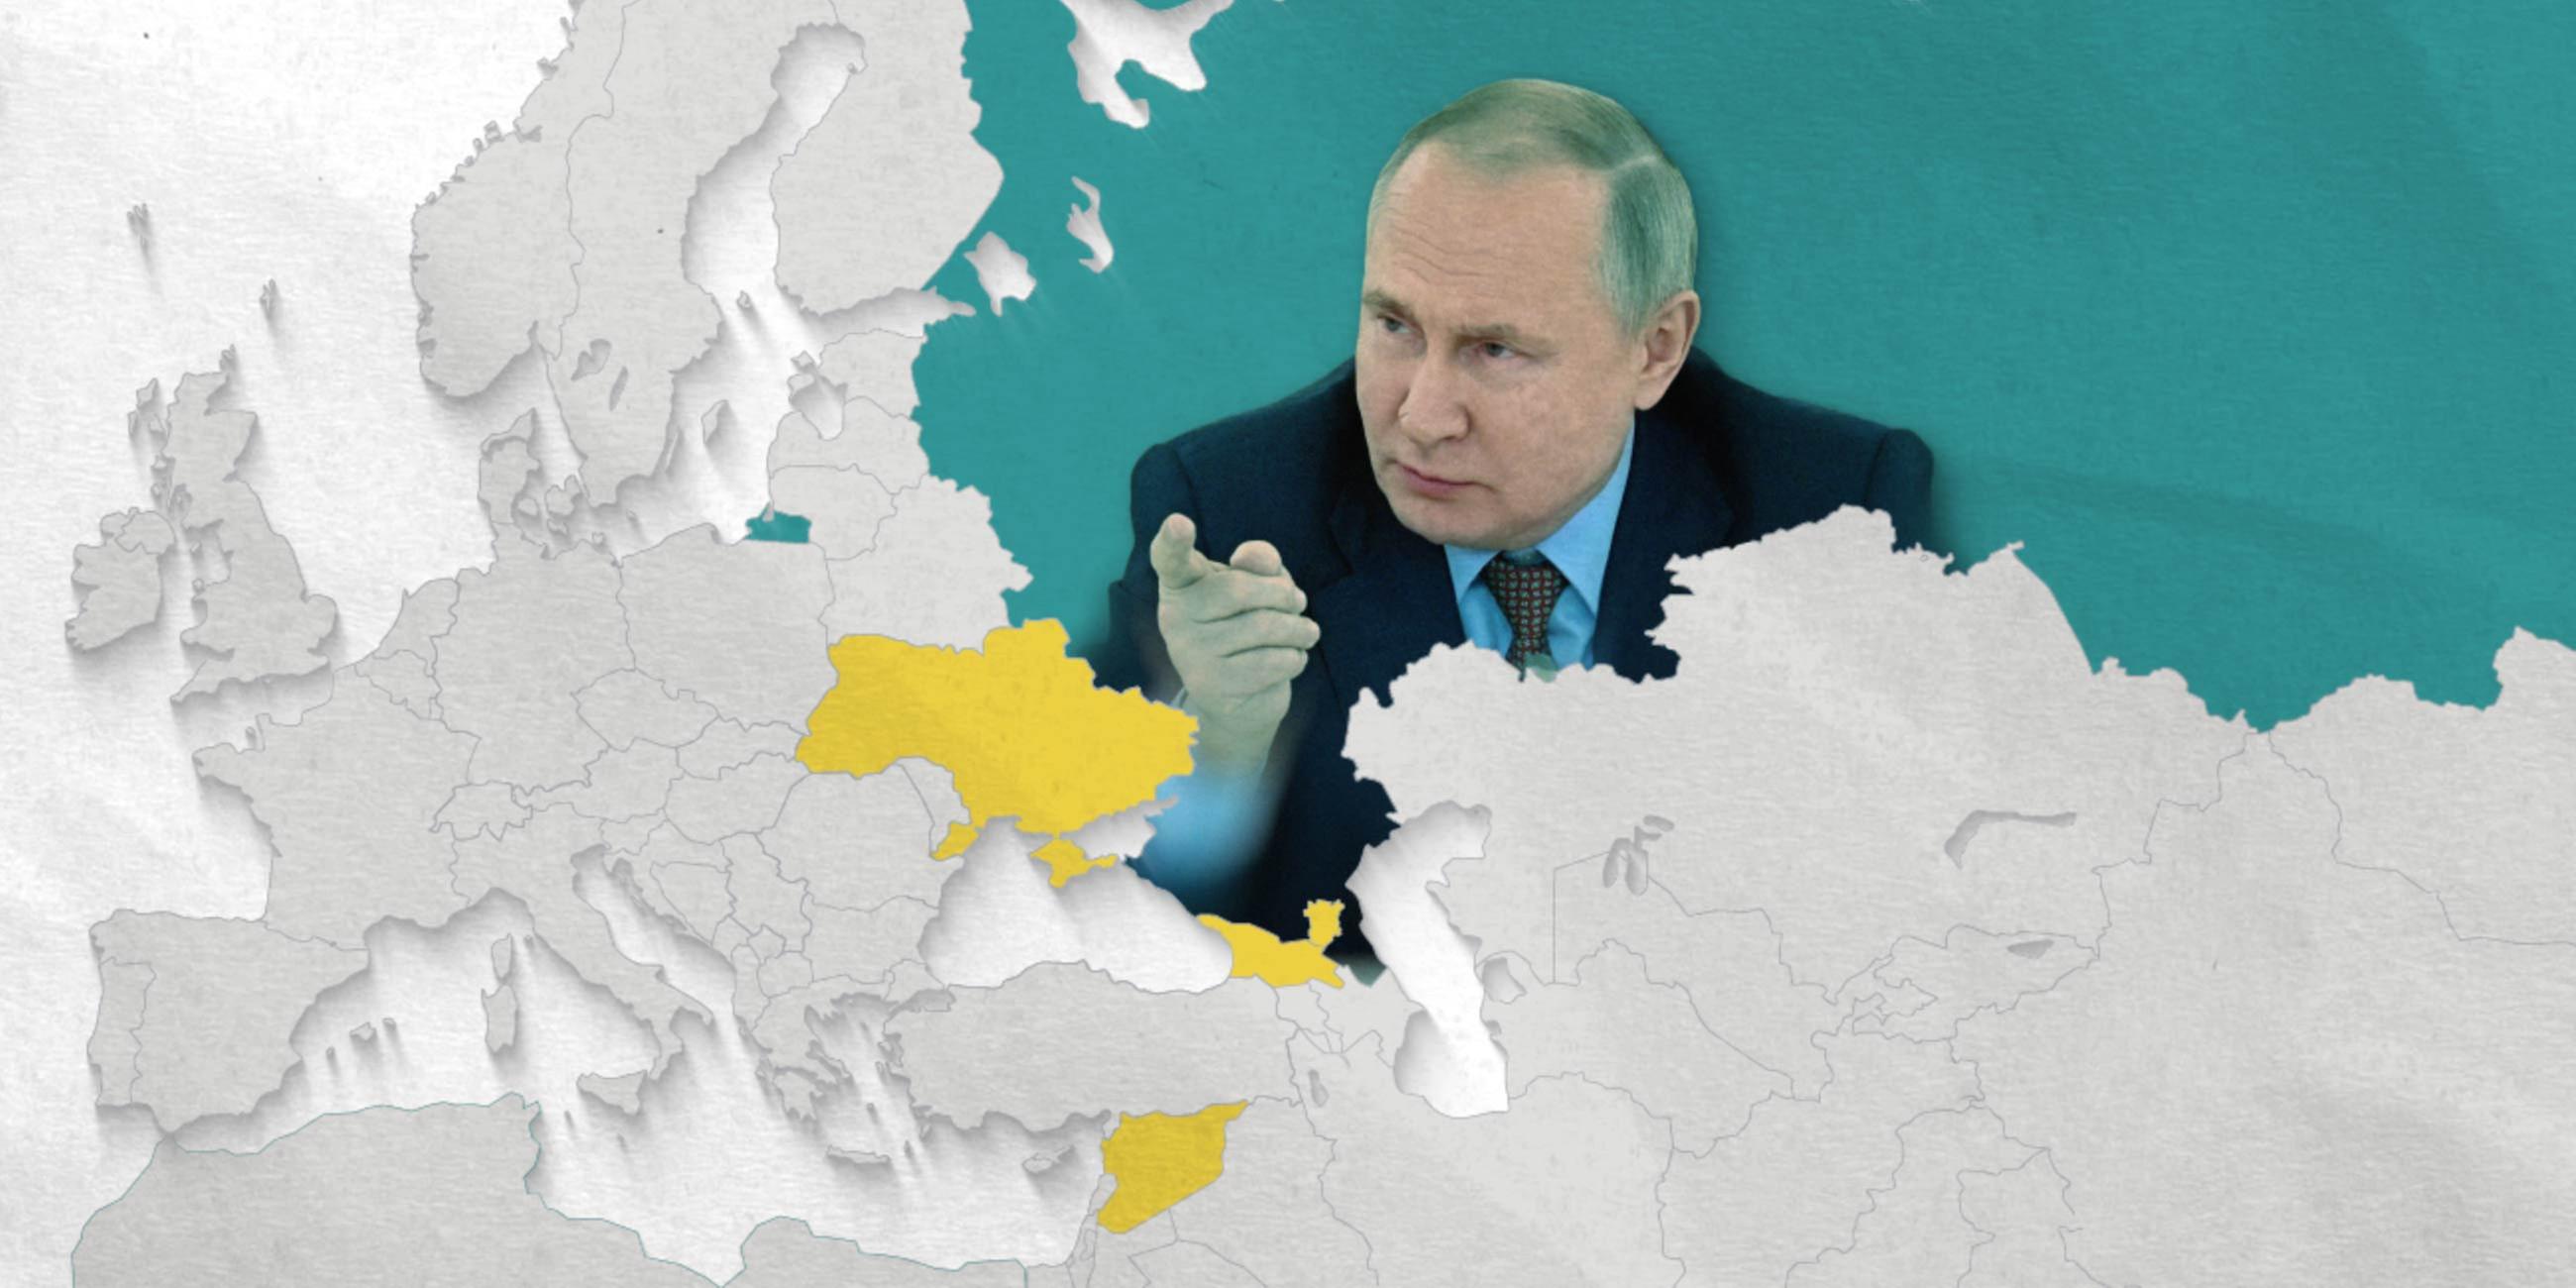 Putin auf Landkarte mit Russland, Ukraine, Georgien und Syrien